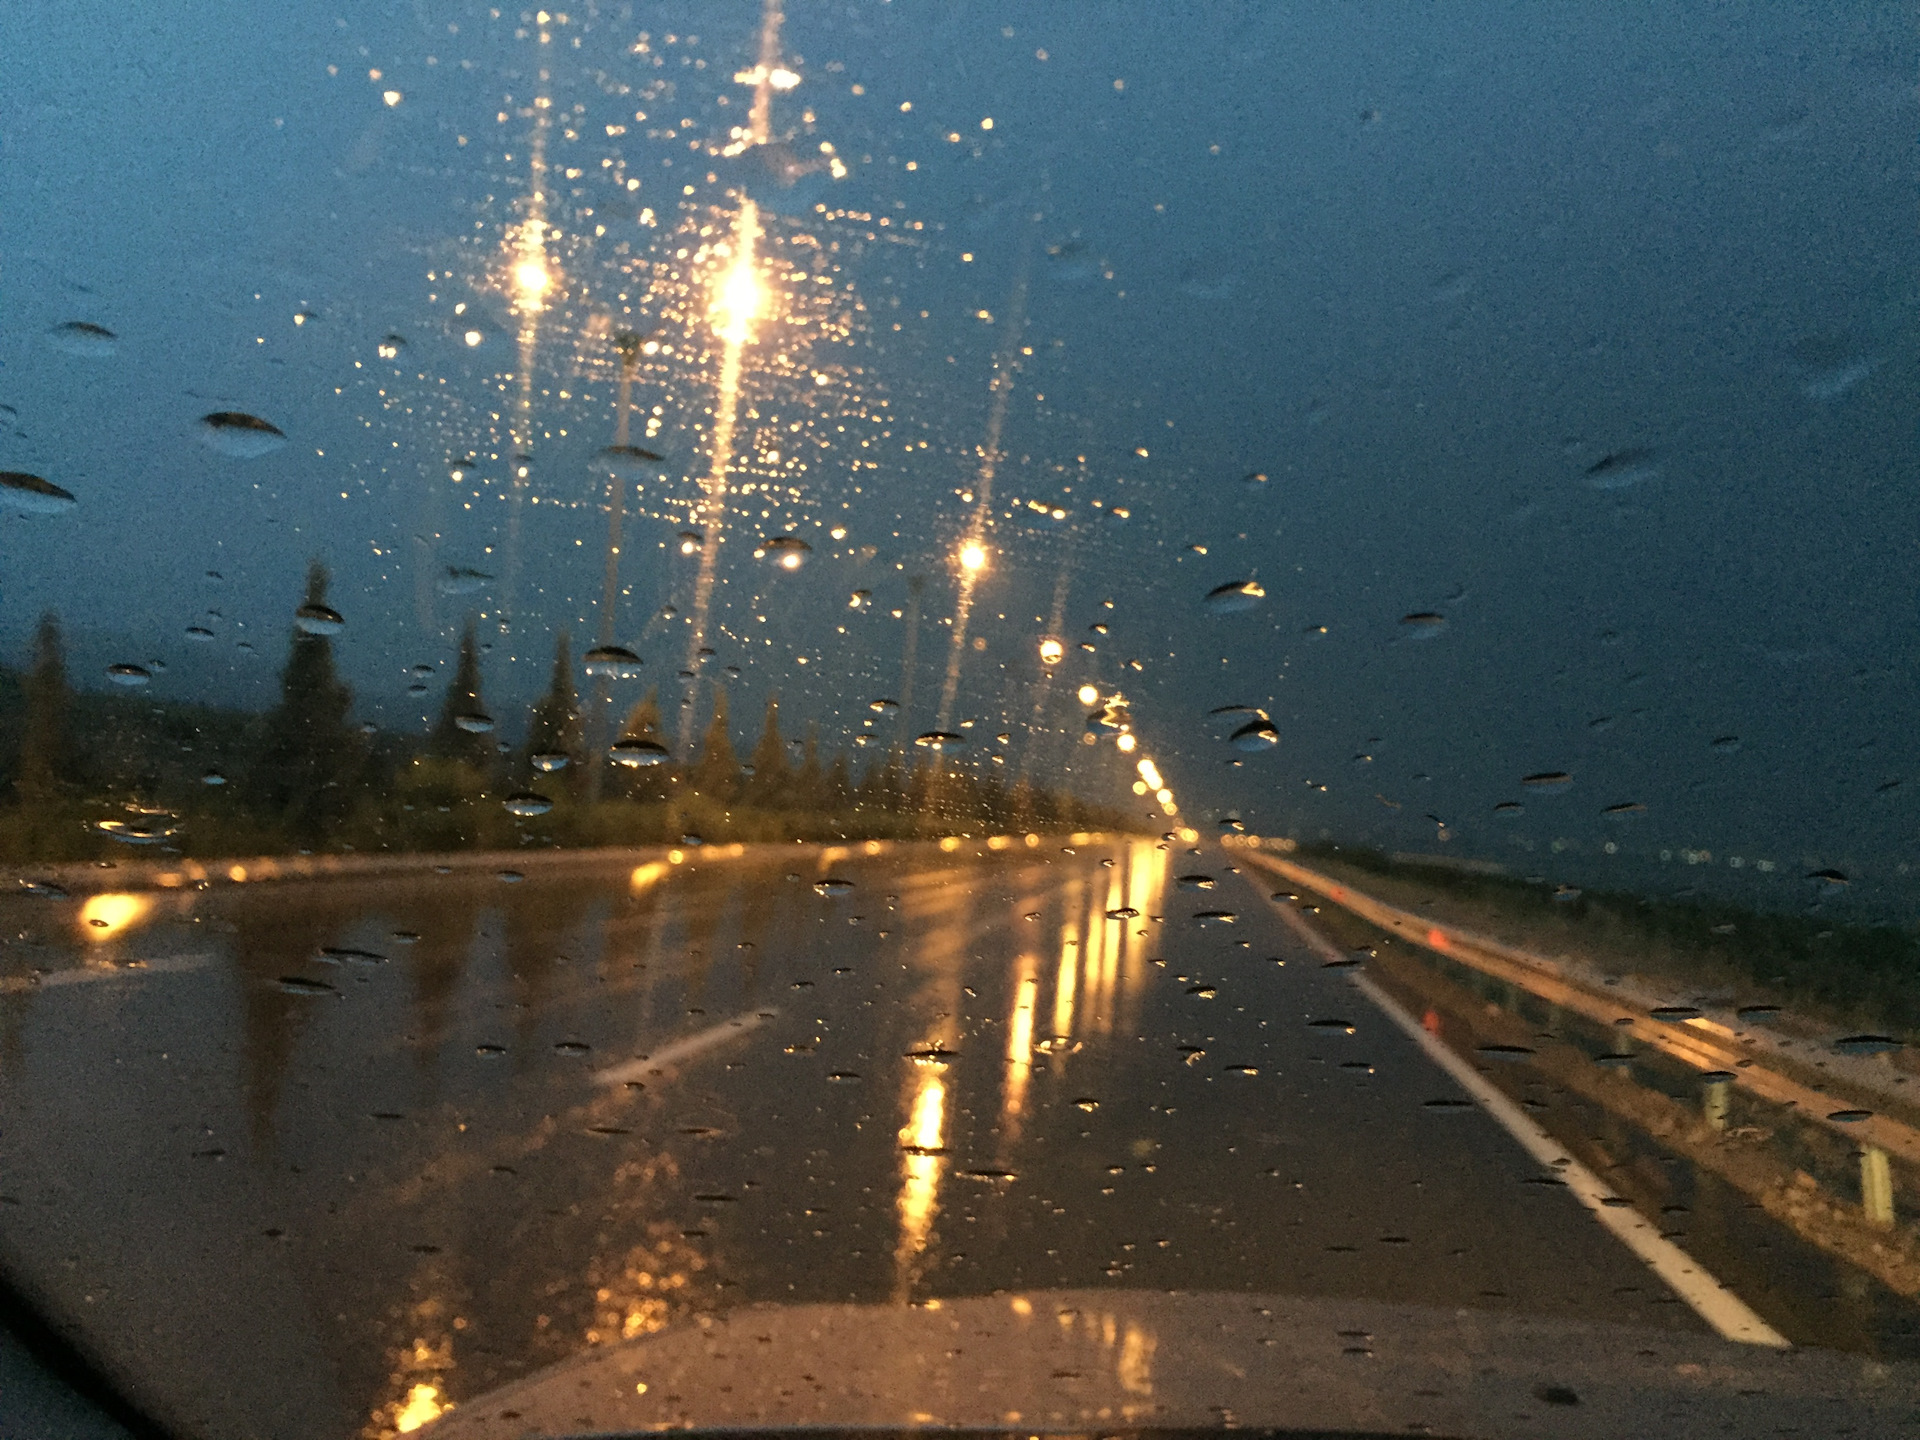 Вид из машины дождь